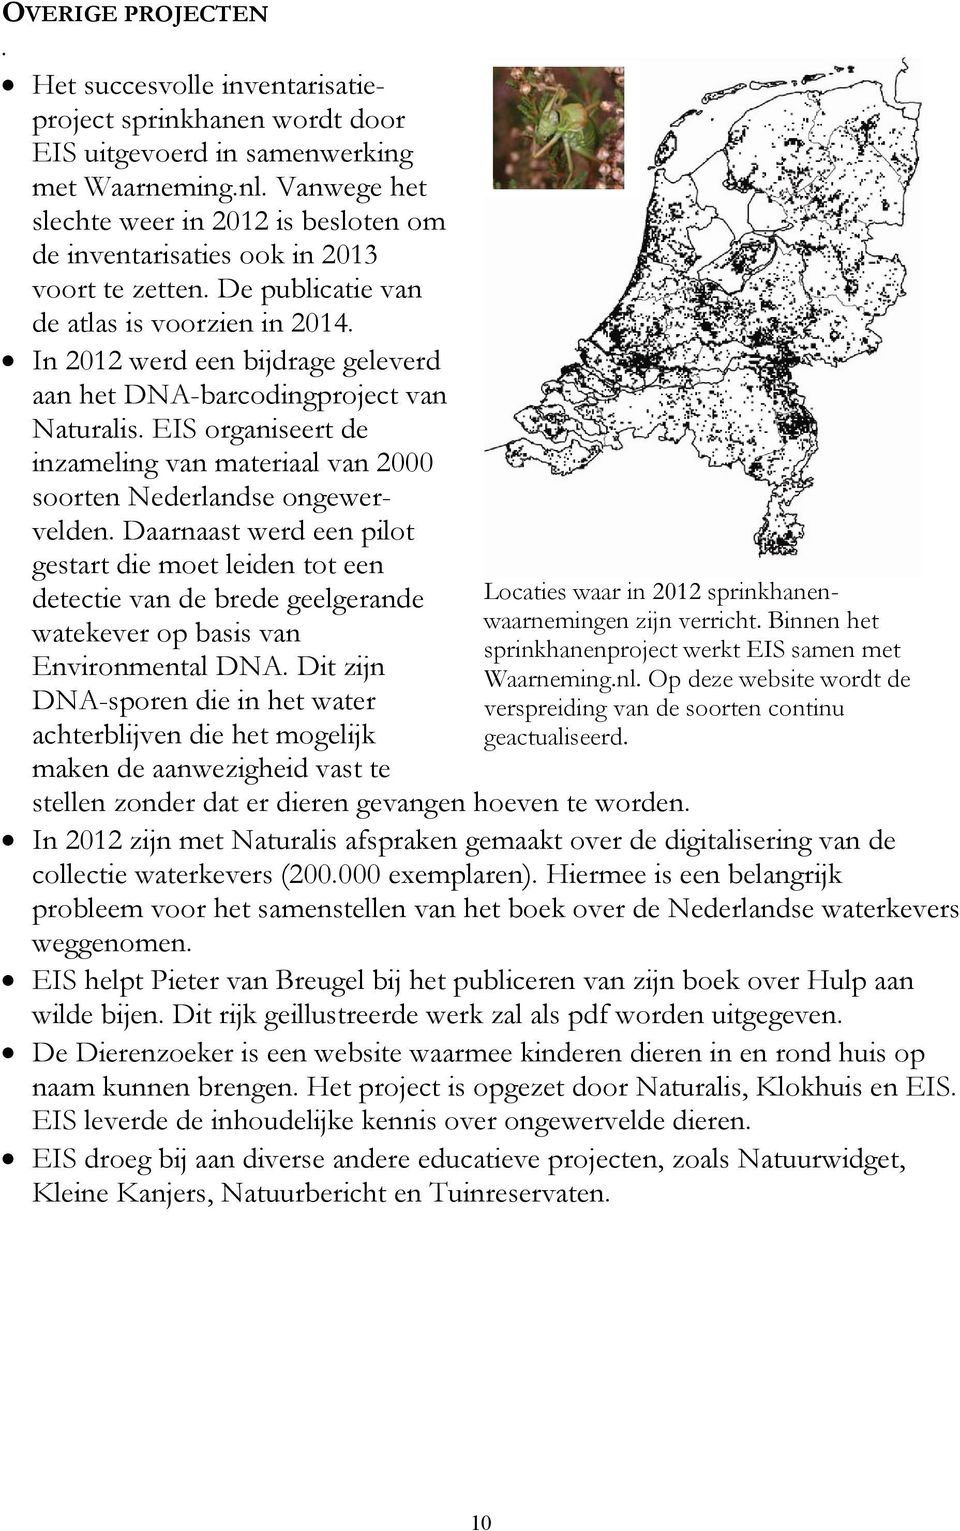 In 2012 werd een bijdrage geleverd aan het DNA-barcodingproject van Naturalis. EIS organiseert de inzameling van materiaal van 2000 soorten Nederlandse ongewervelden.